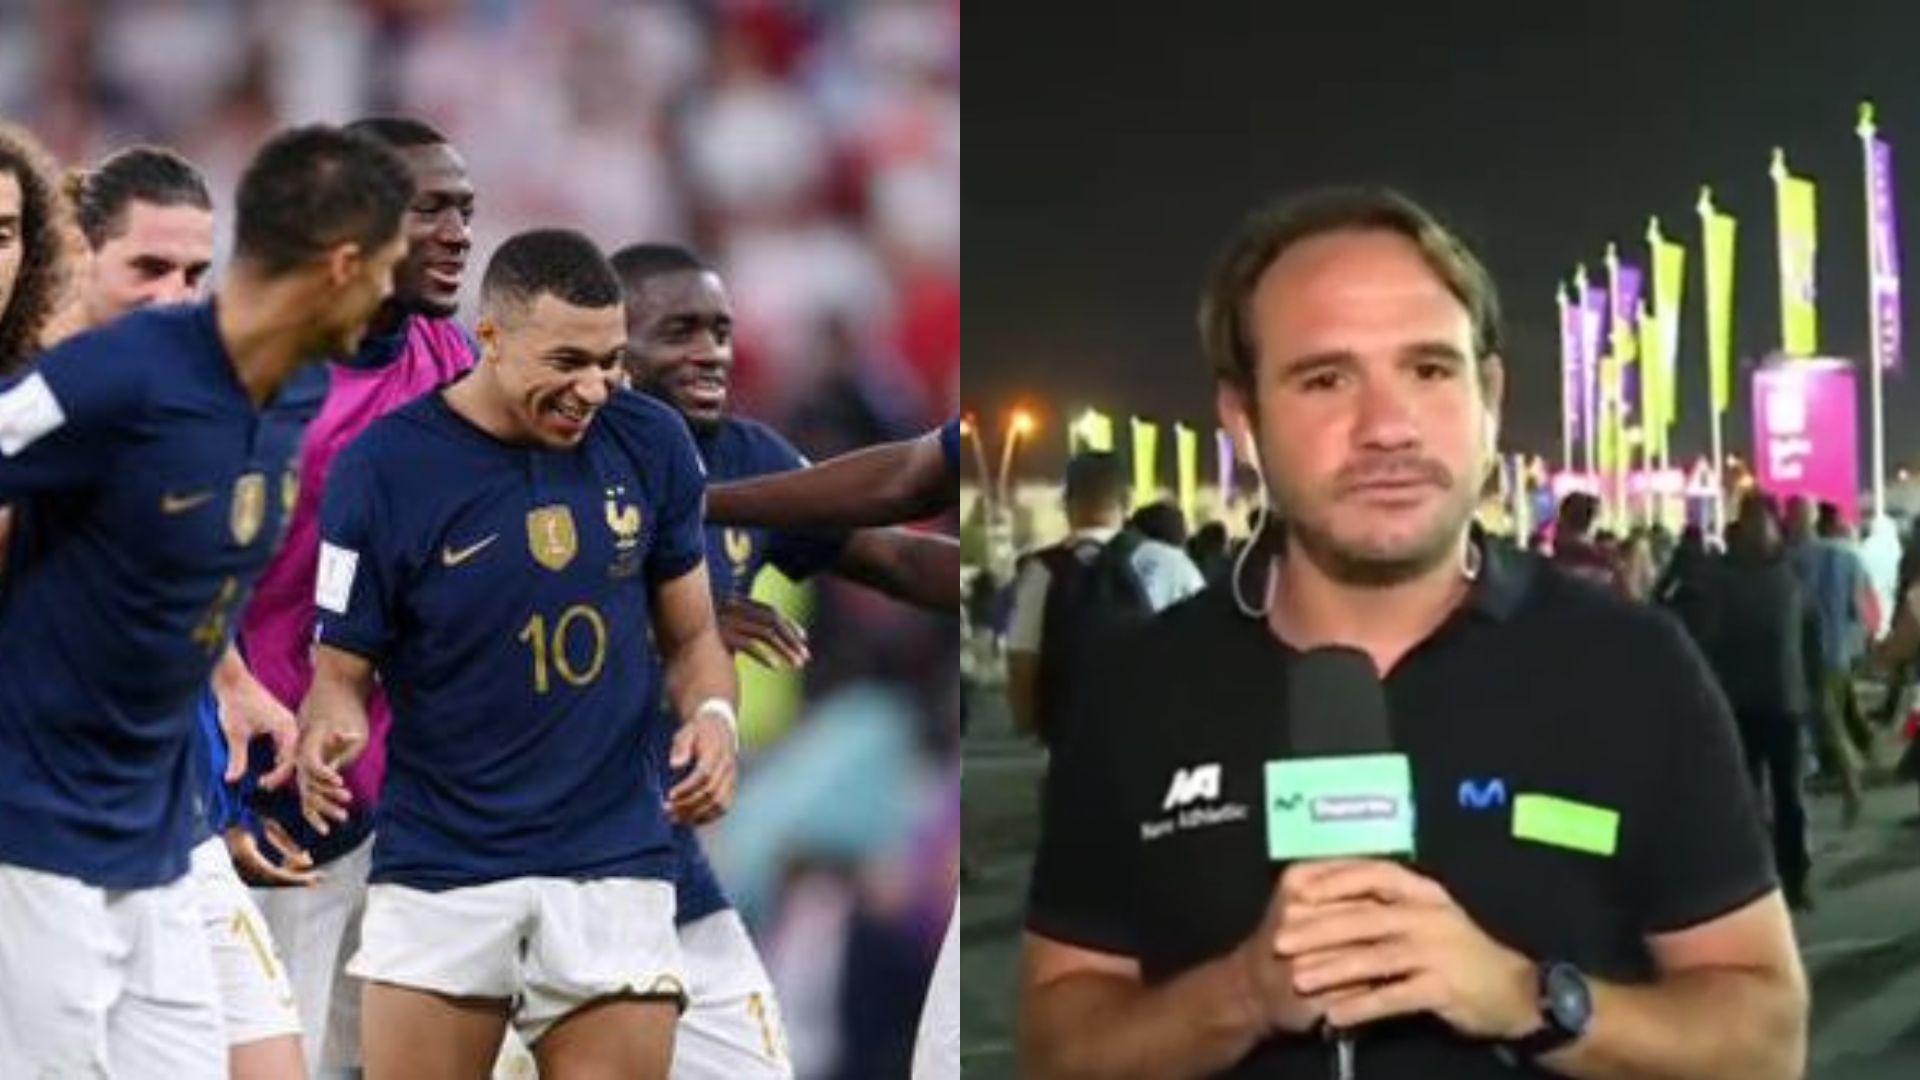 Michael Succar impresionado con Kylian Mbappé: “Es difícil imaginar los récords que seguirá batiendo”